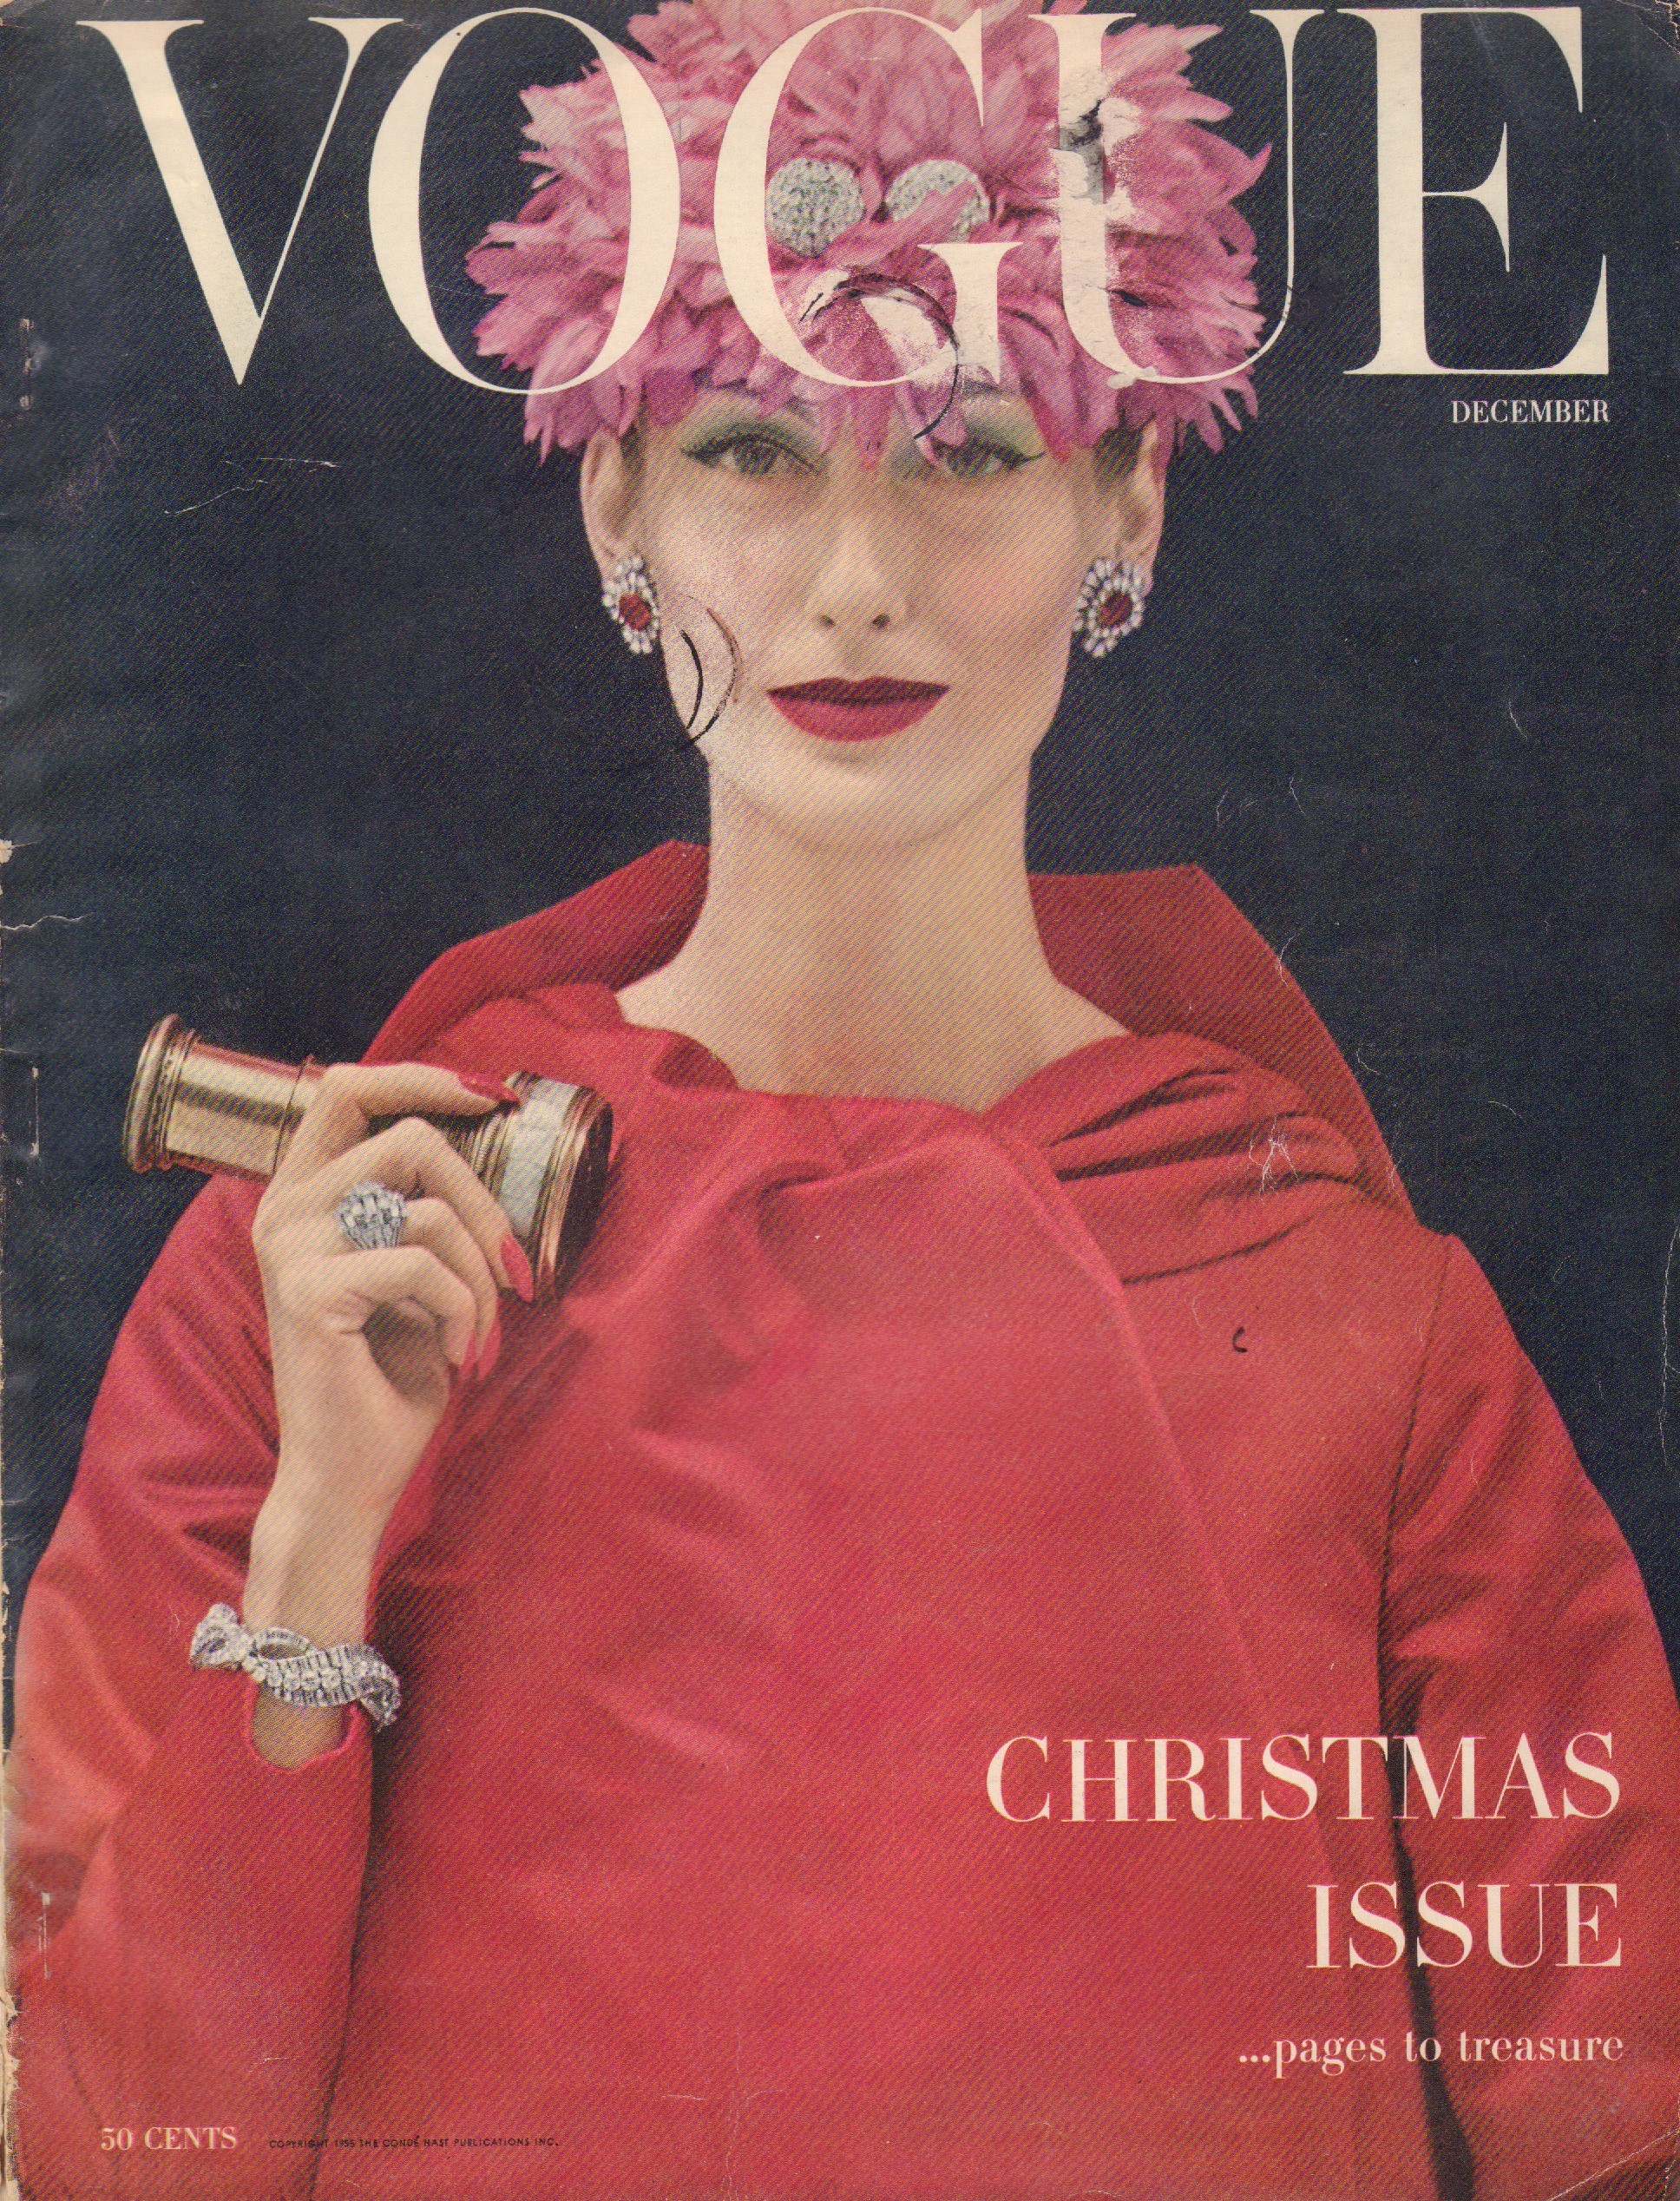 Vogue Knitting Book Fall-Winter 1958